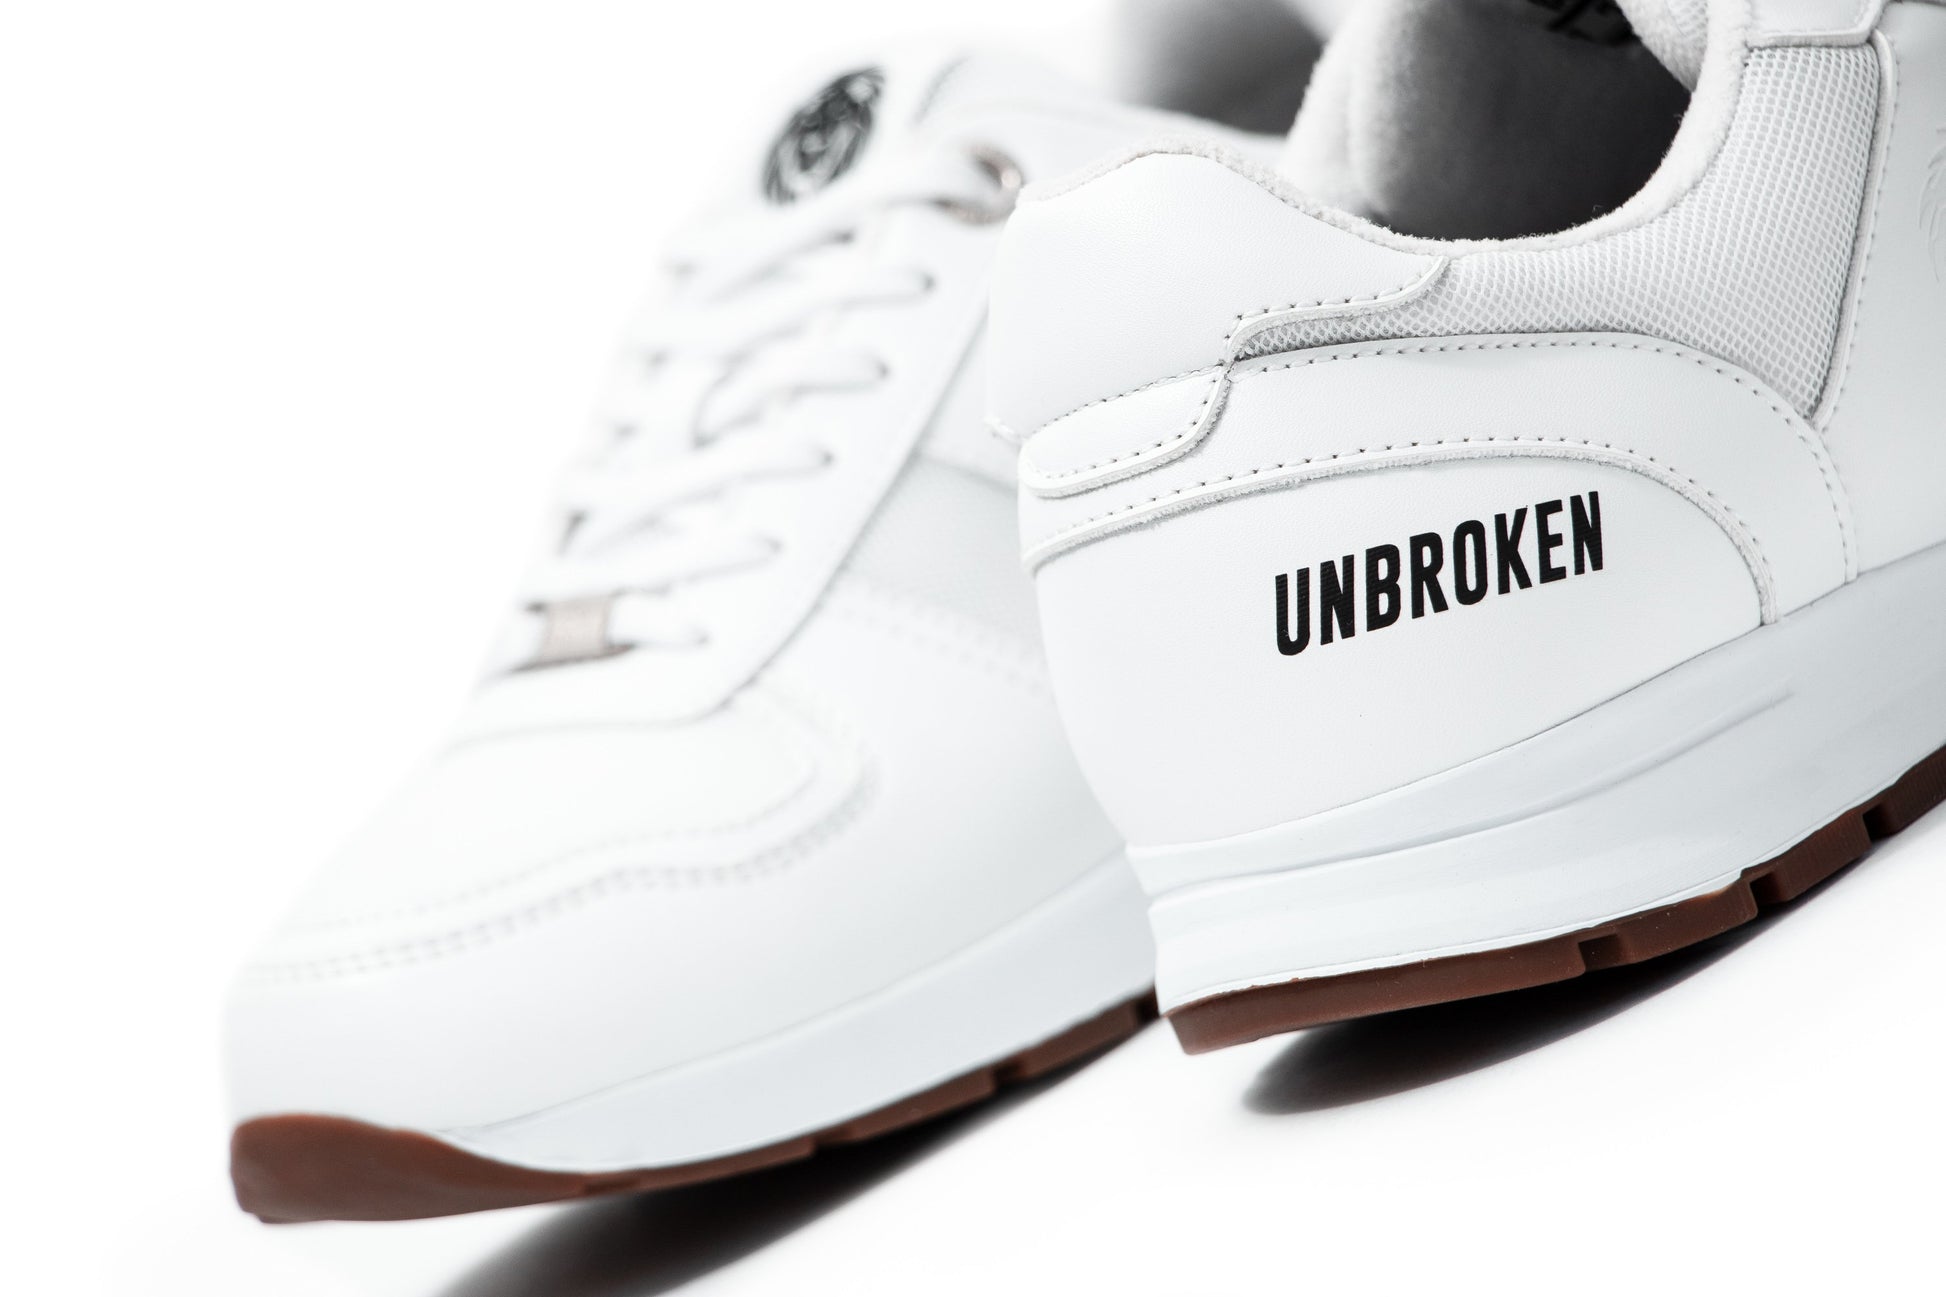 Tenis Unbroken Falcon blanco - Unbroken Sports Wear 